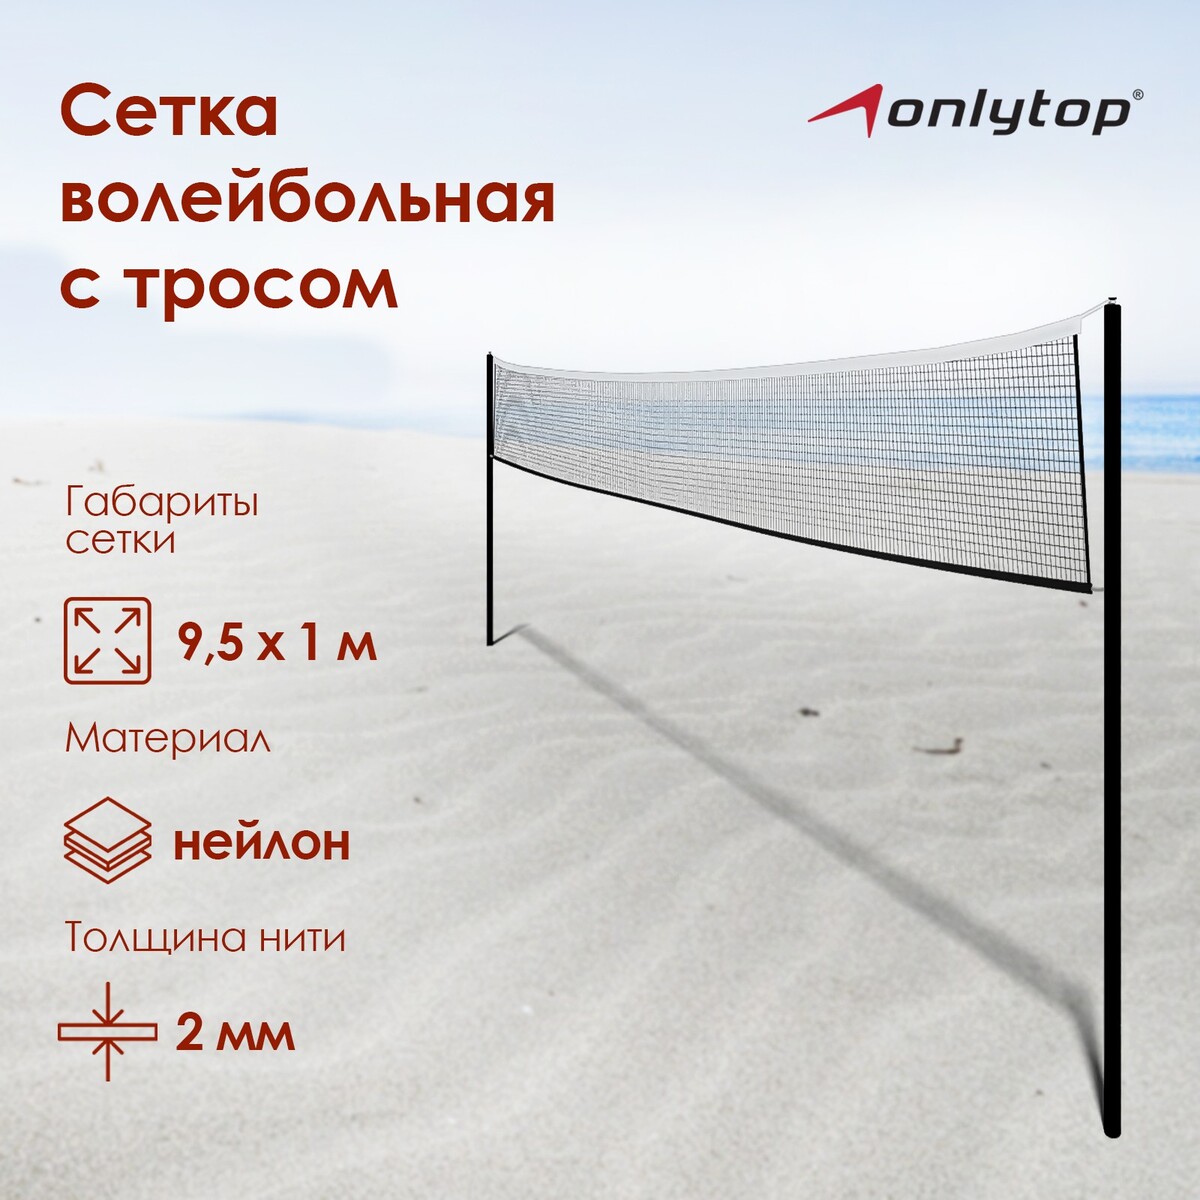 Сетка волейбольная onlytop, с тросом, нить 2 мм, 9,5х1 м сетка для настольного тенниса onlytop 184х14 см с крепежом